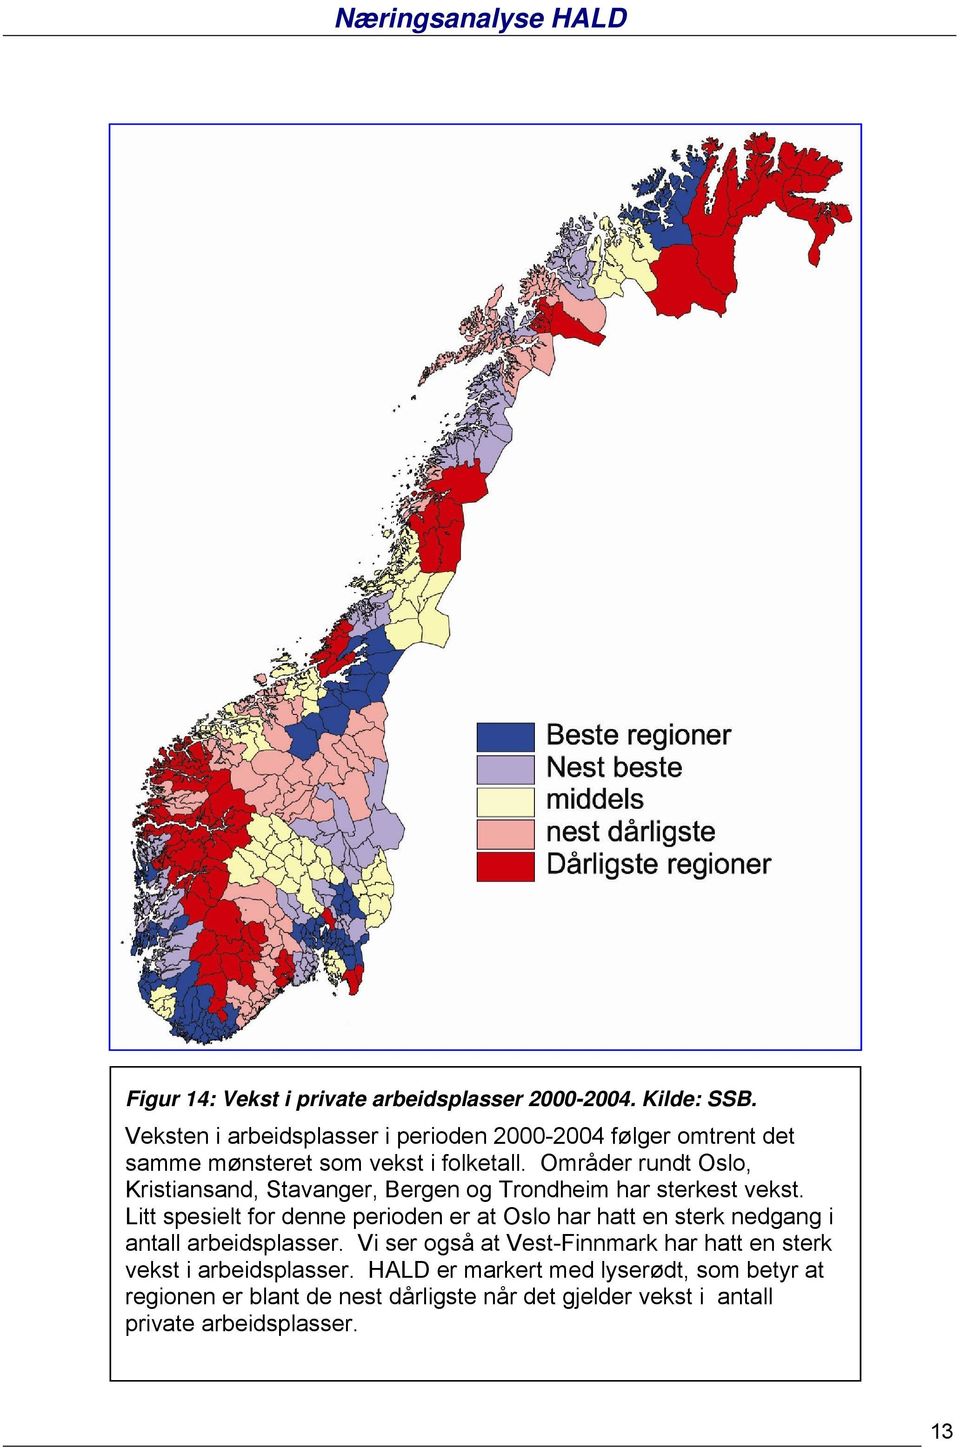 Områder rundt Oslo, Kristiansand, Stavanger, Bergen og Trondheim har sterkest vekst.